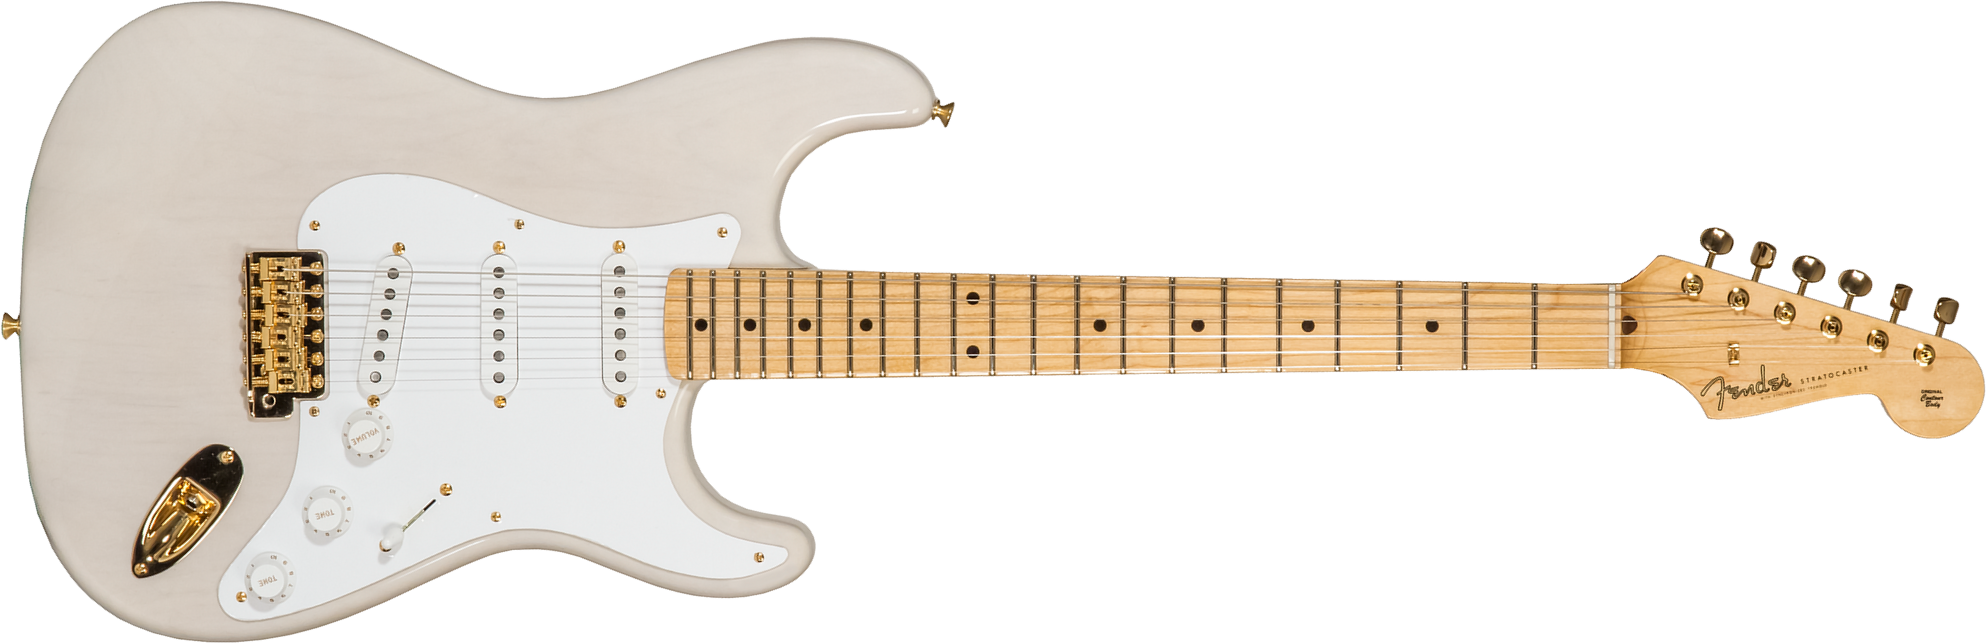 Fender Custom Shop Strat 1957 3s Trem Mn #r125475 - Nos White Blonde - Elektrische gitaar in Str-vorm - Main picture